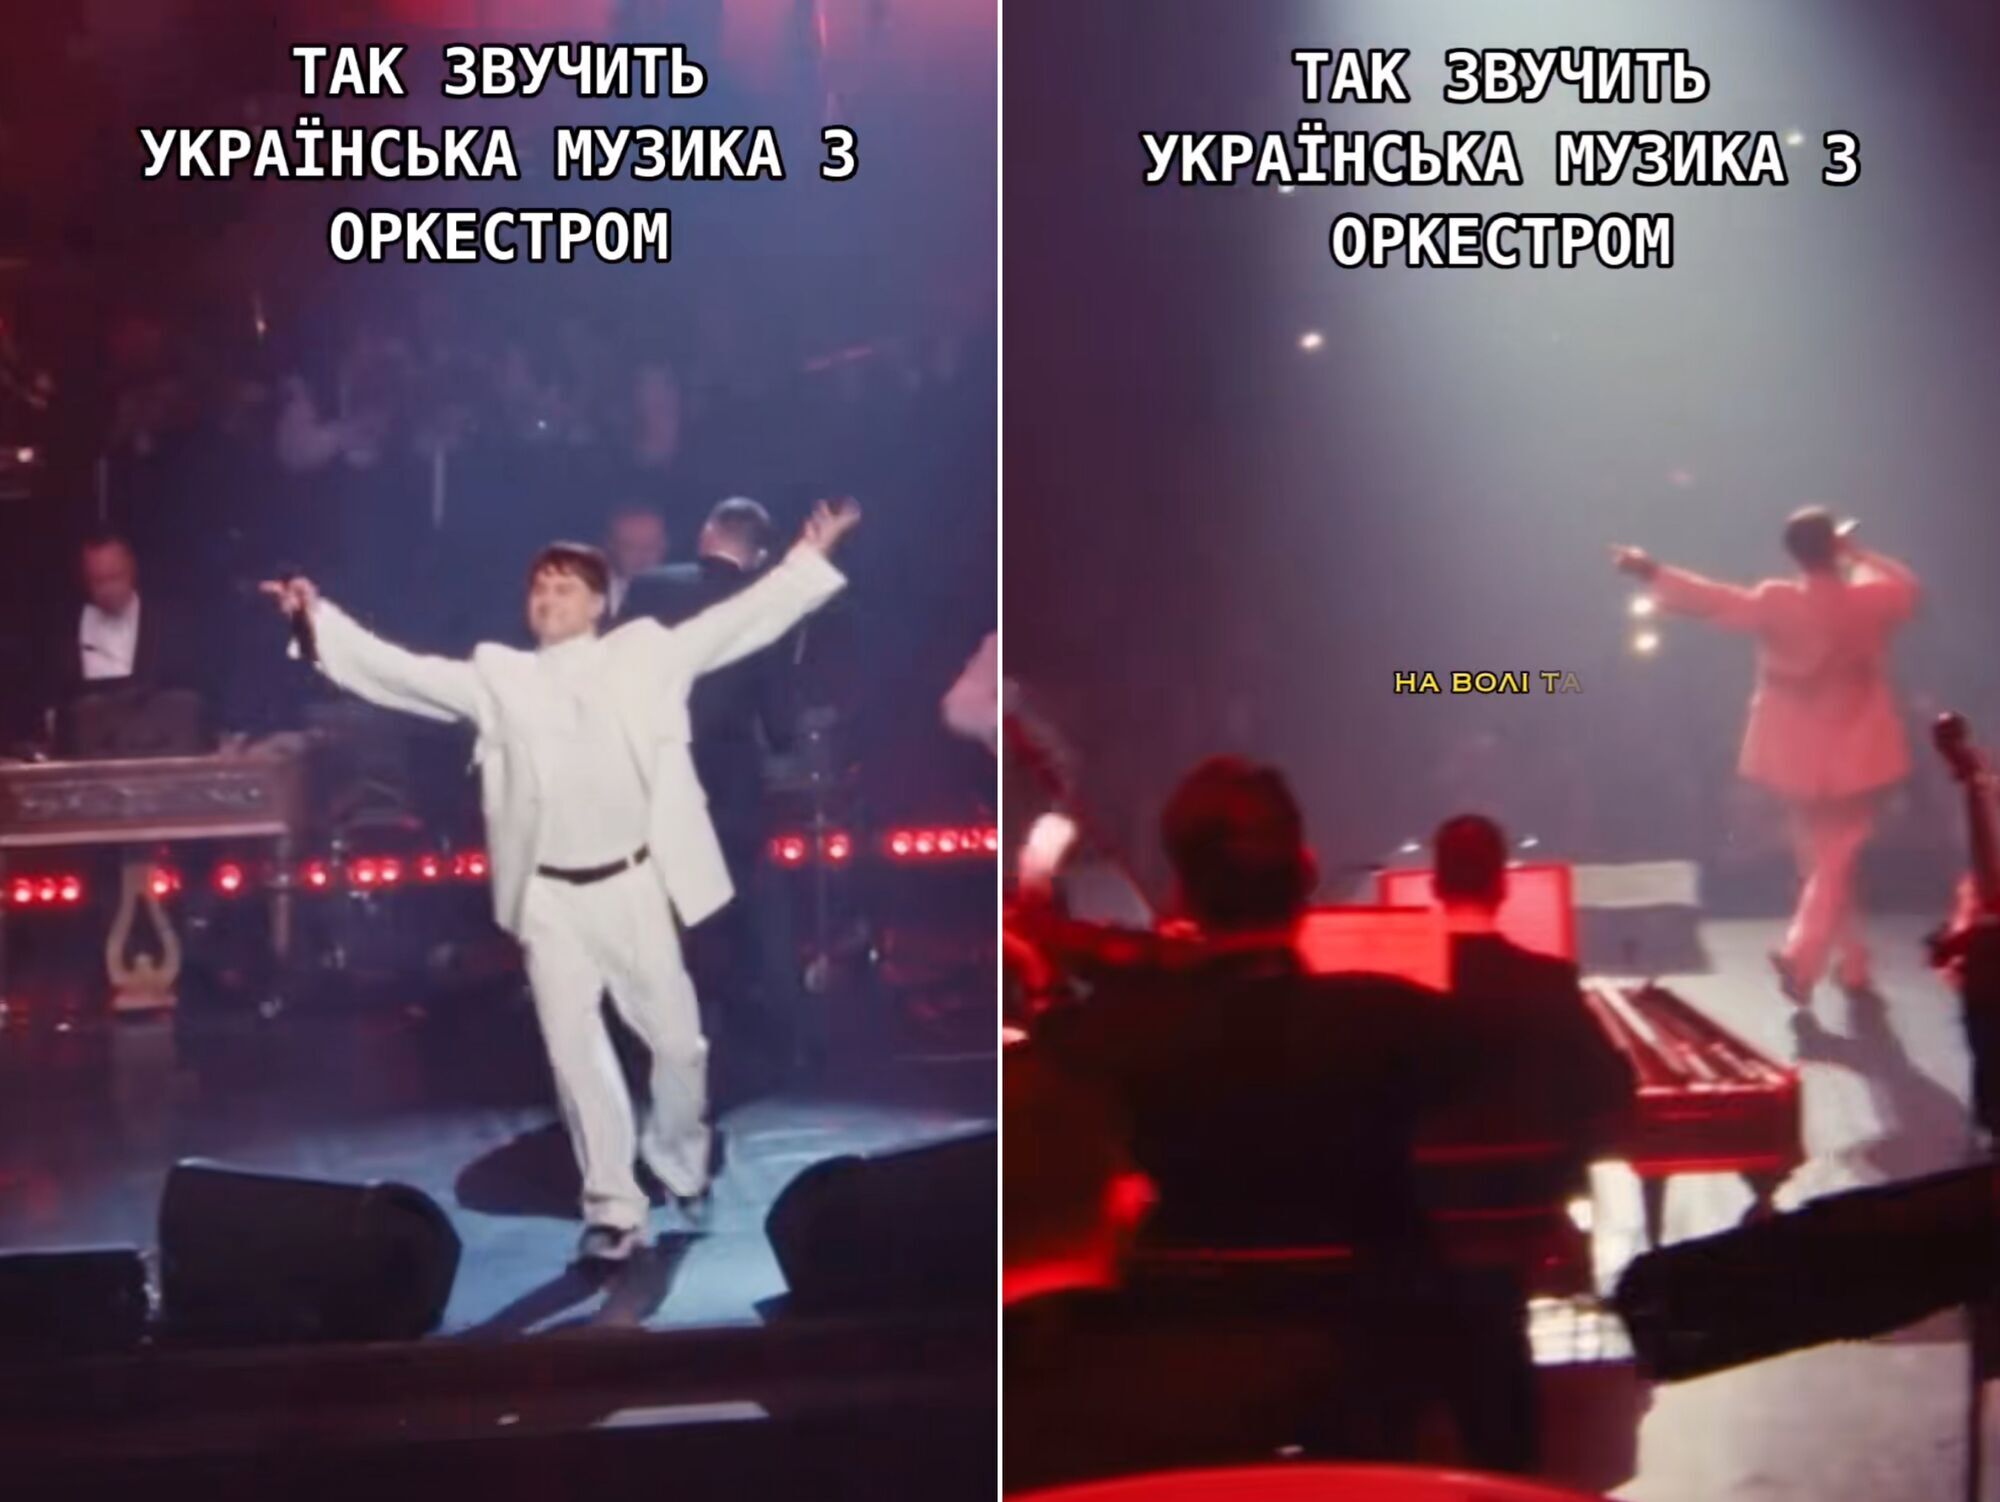 "Феерия! До мурашек": Пивоваров поразил мощным исполнением песни под оркестр. Видео